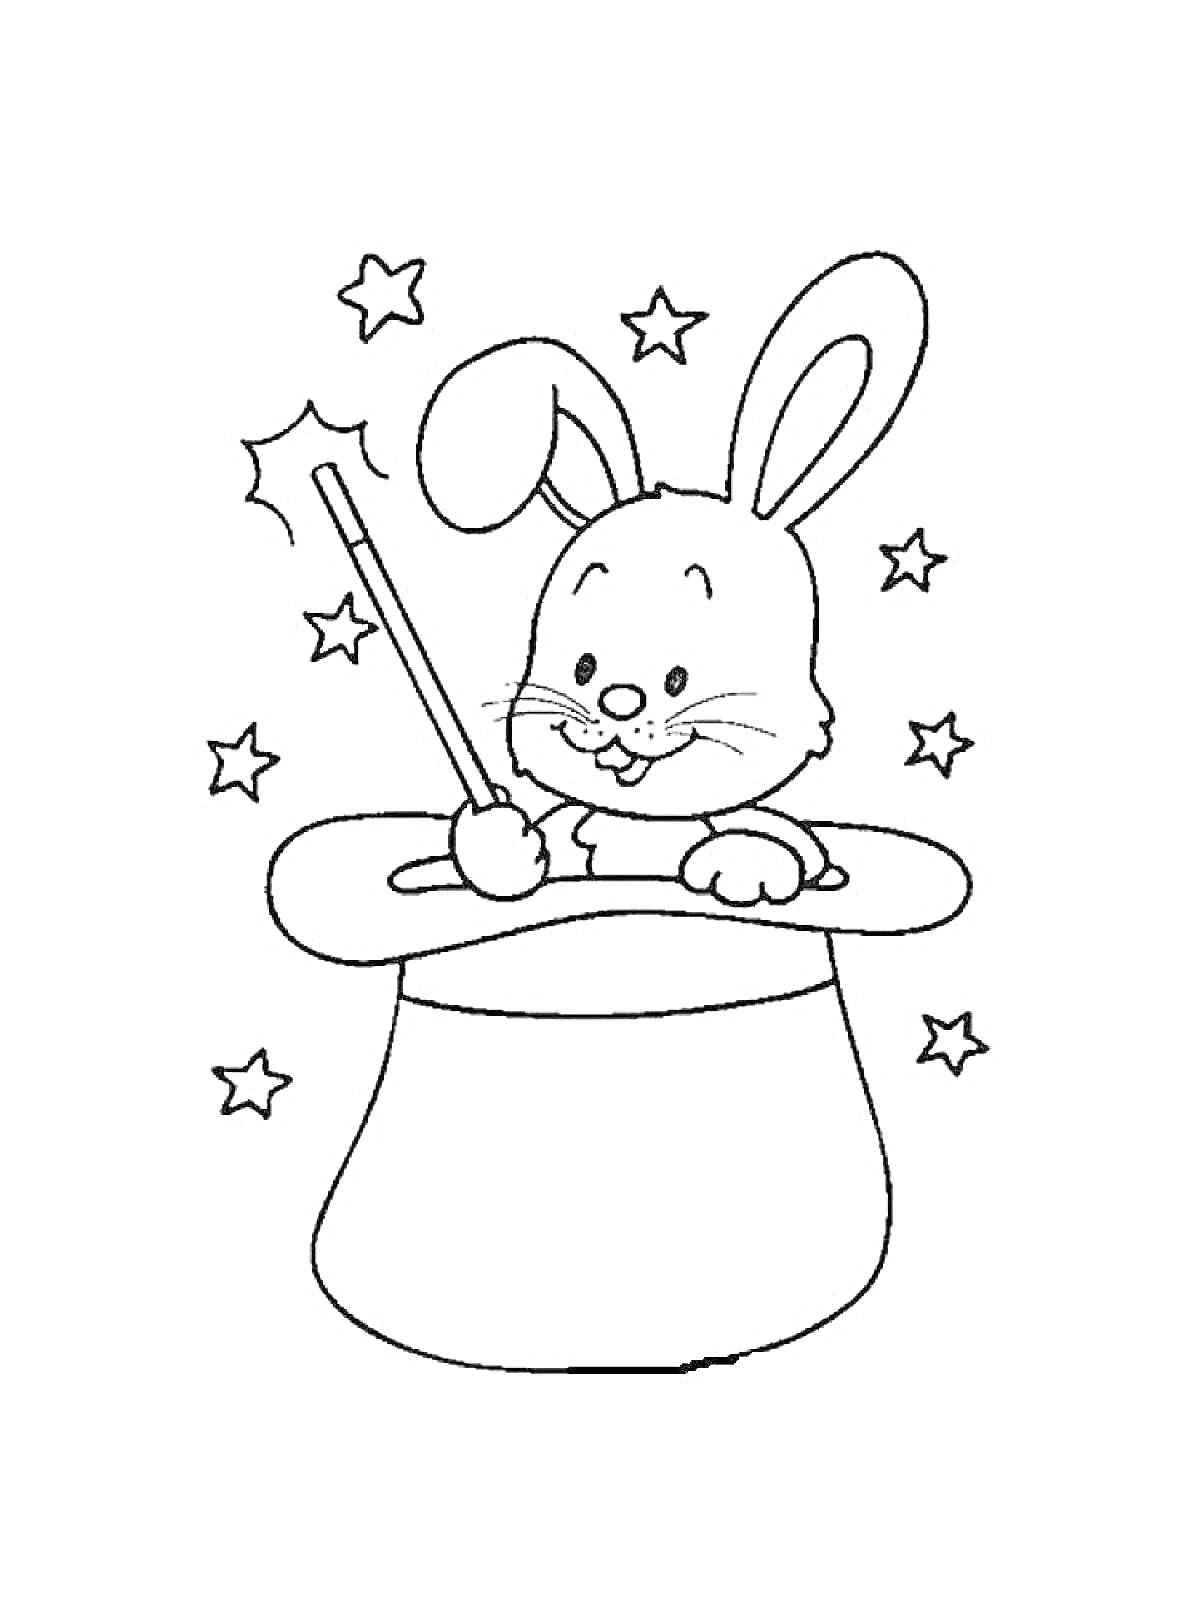 Раскраска кролик с магической палочкой в цилиндре и звезды